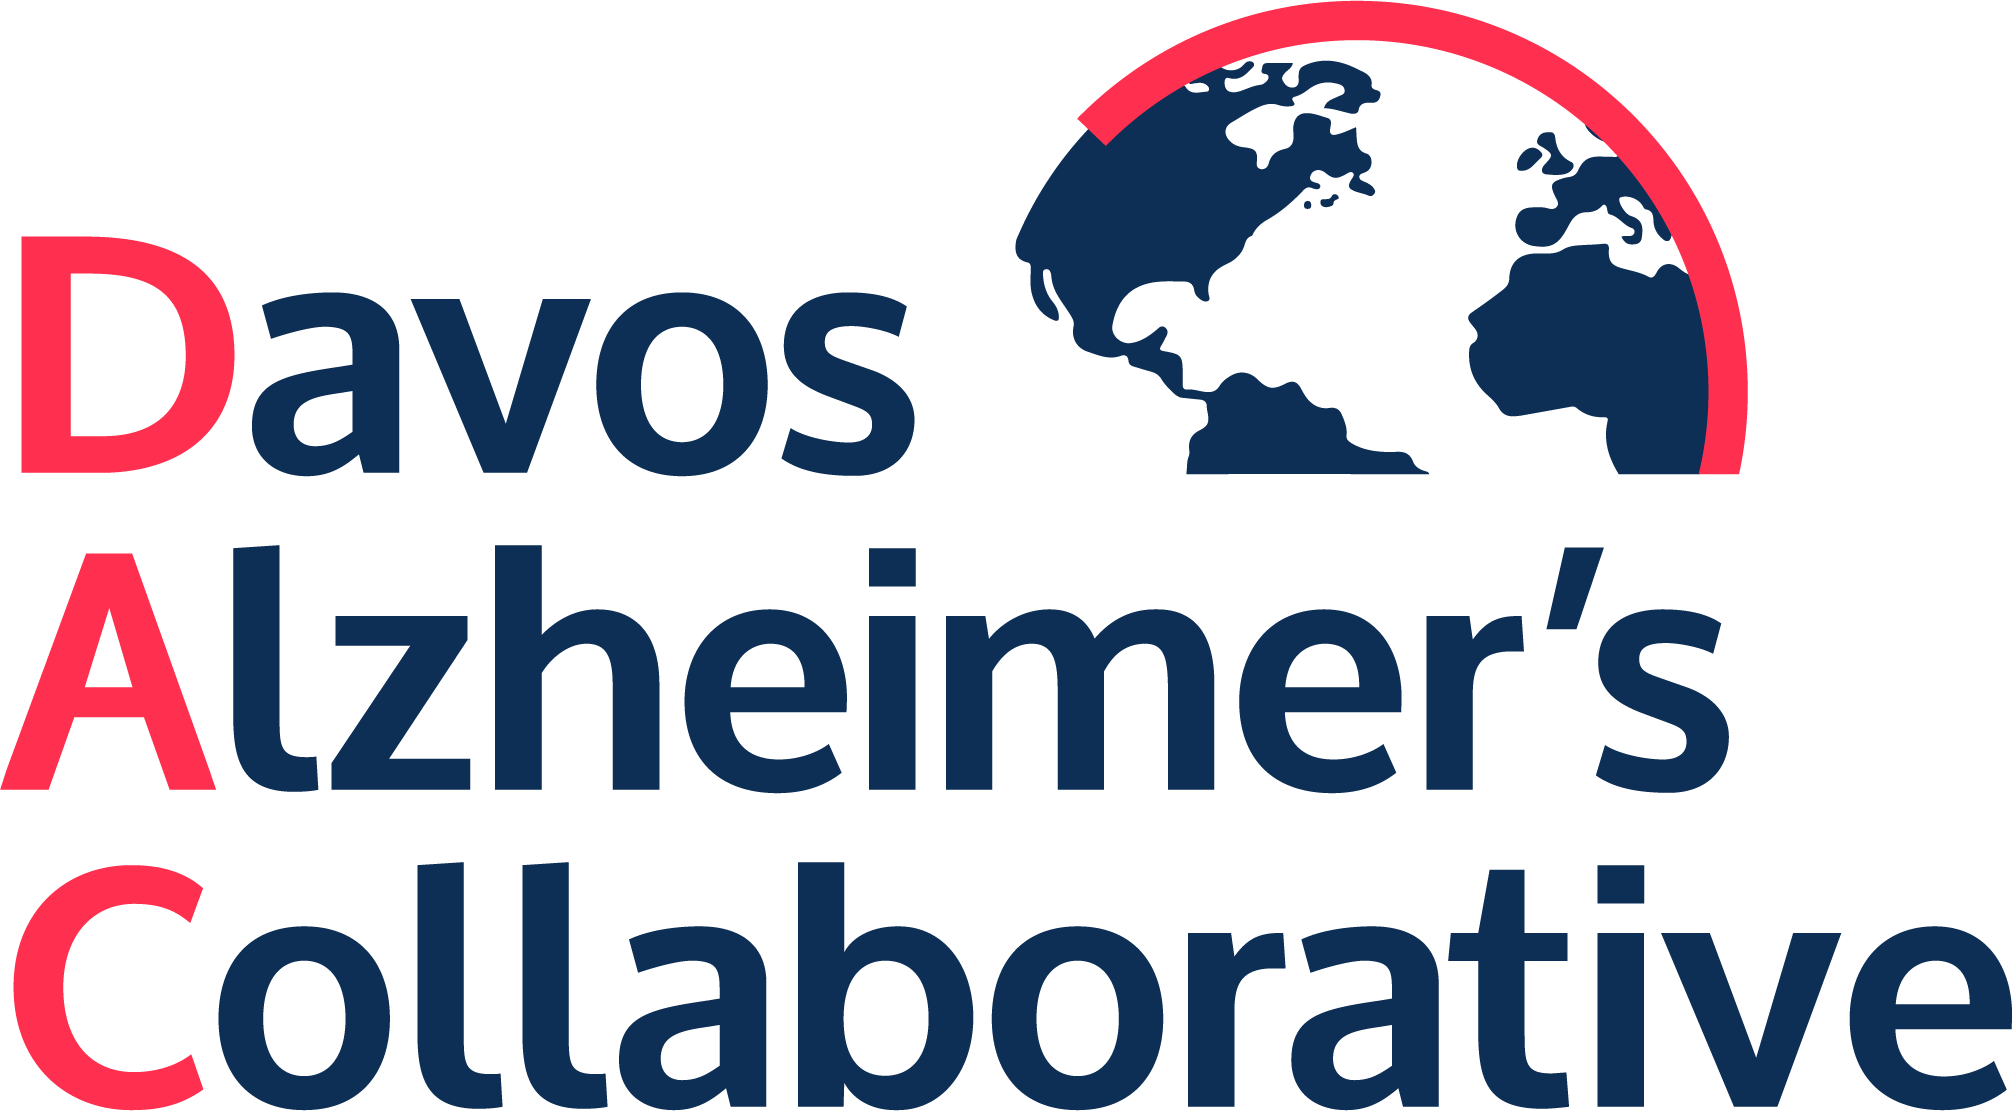 Davos Alzheimer’s Collaborative logo